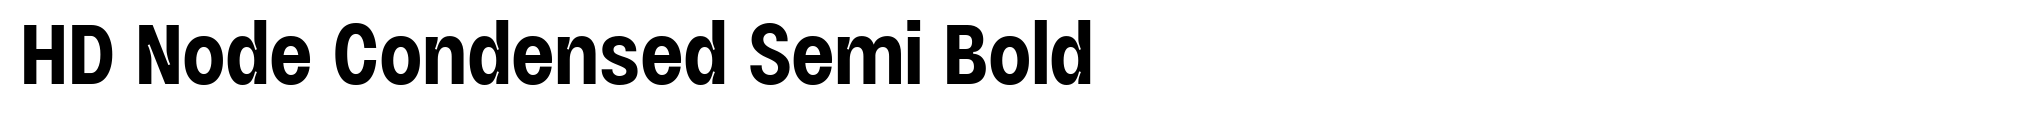 HD Node Condensed Semi Bold image